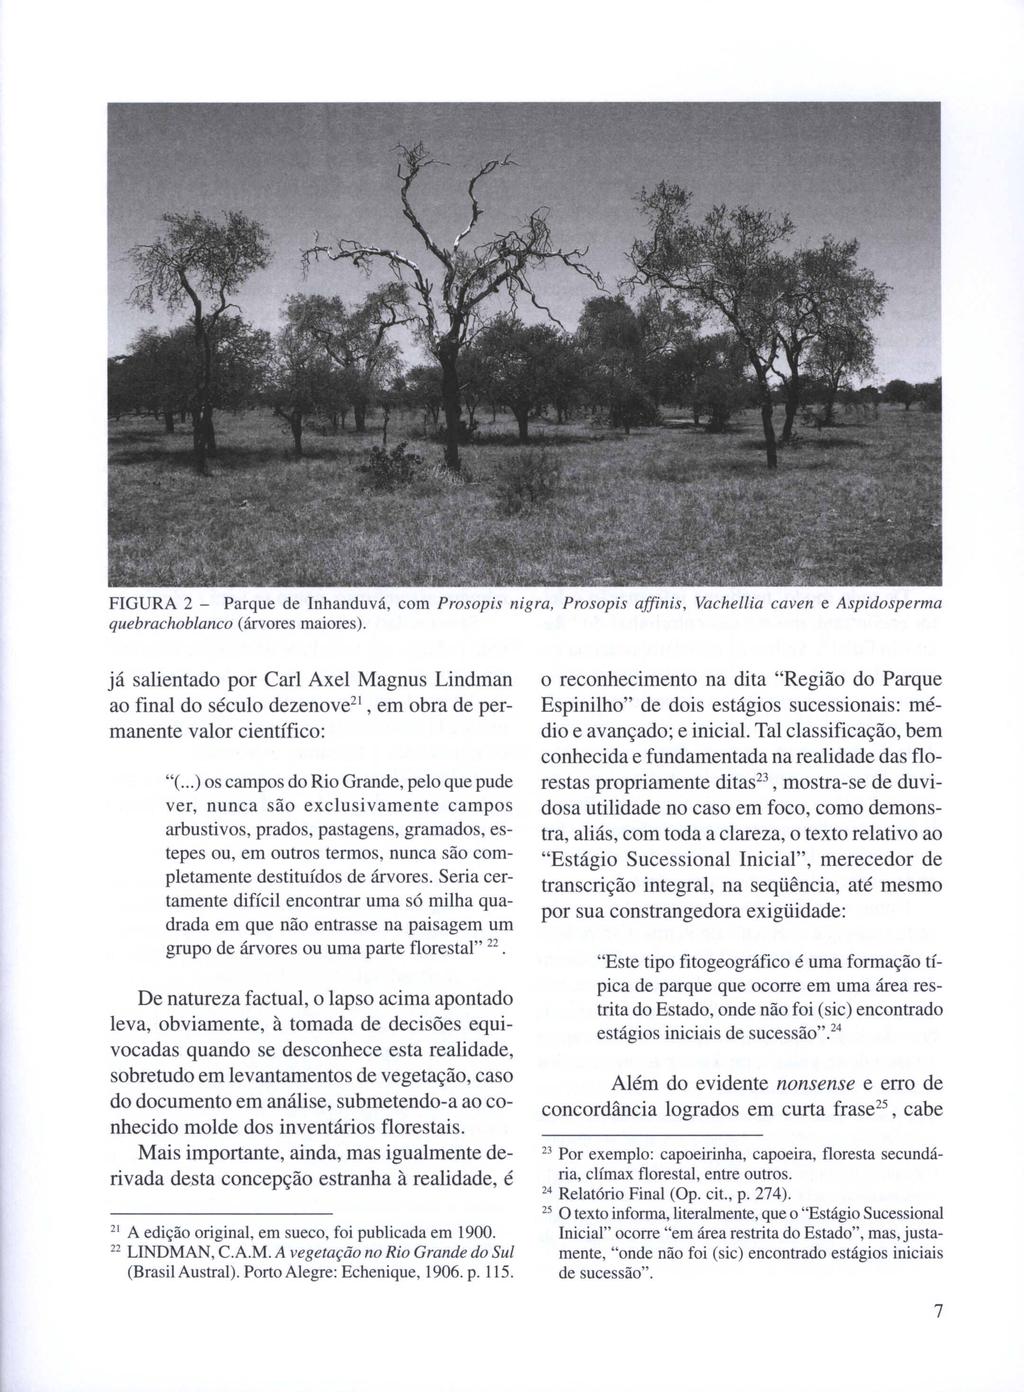 FIGURA 2 - Parque de Inhanduvá, com Prosopis nigra, Prosopis affinis, Vachellia caven e Aspidosperma quebrachoblanco (árvores maiores).